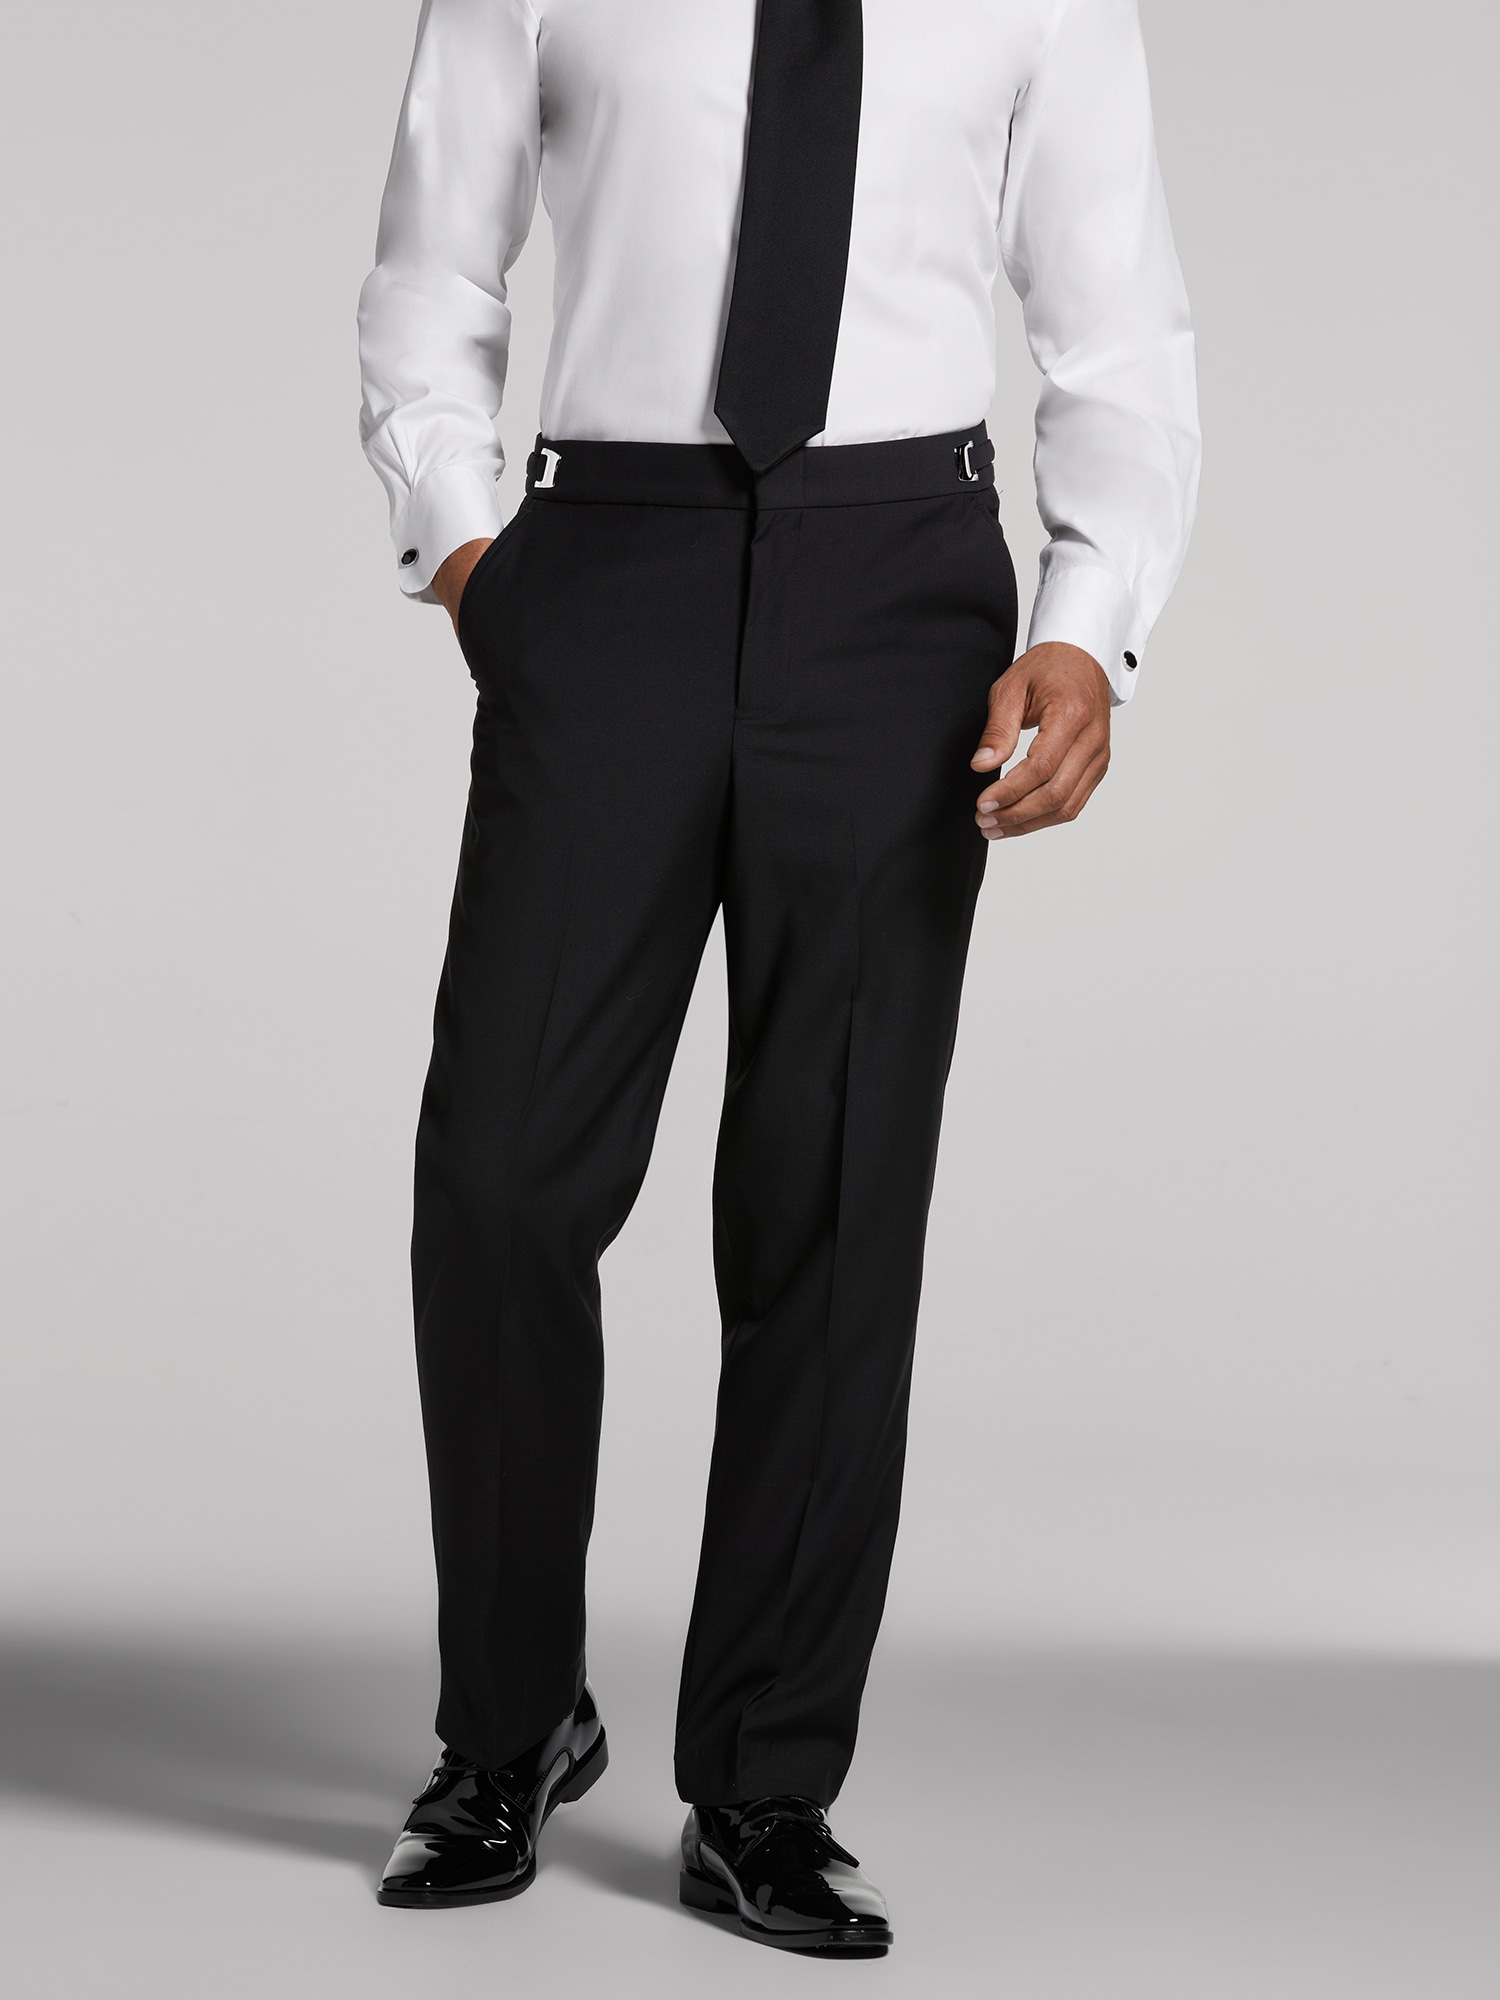 Black Shawl Lapel Tuxedo by Calvin Klein | Tuxedo Rental